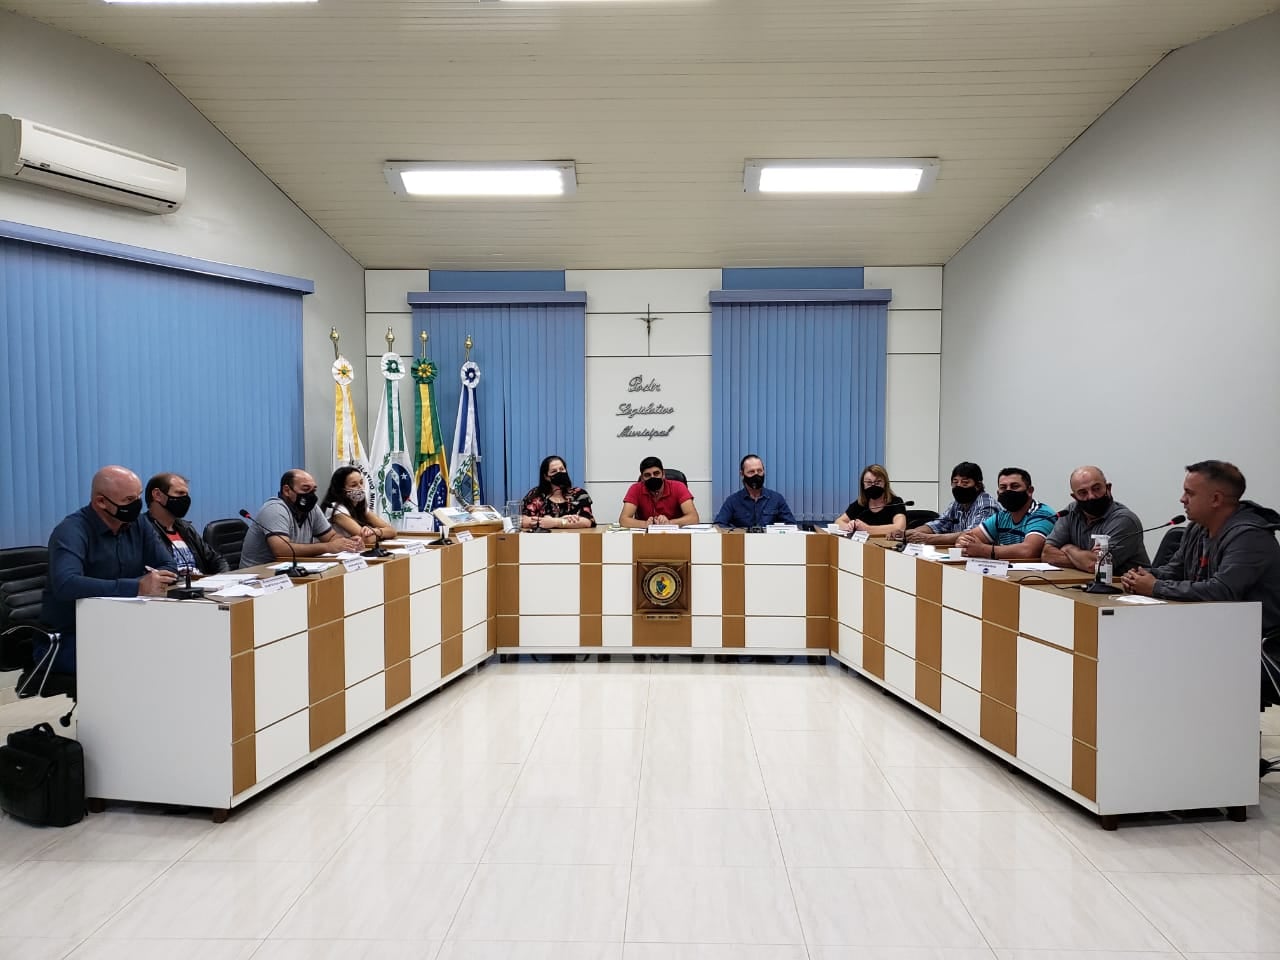 Foto da Câmara Municipal de Mariópolis